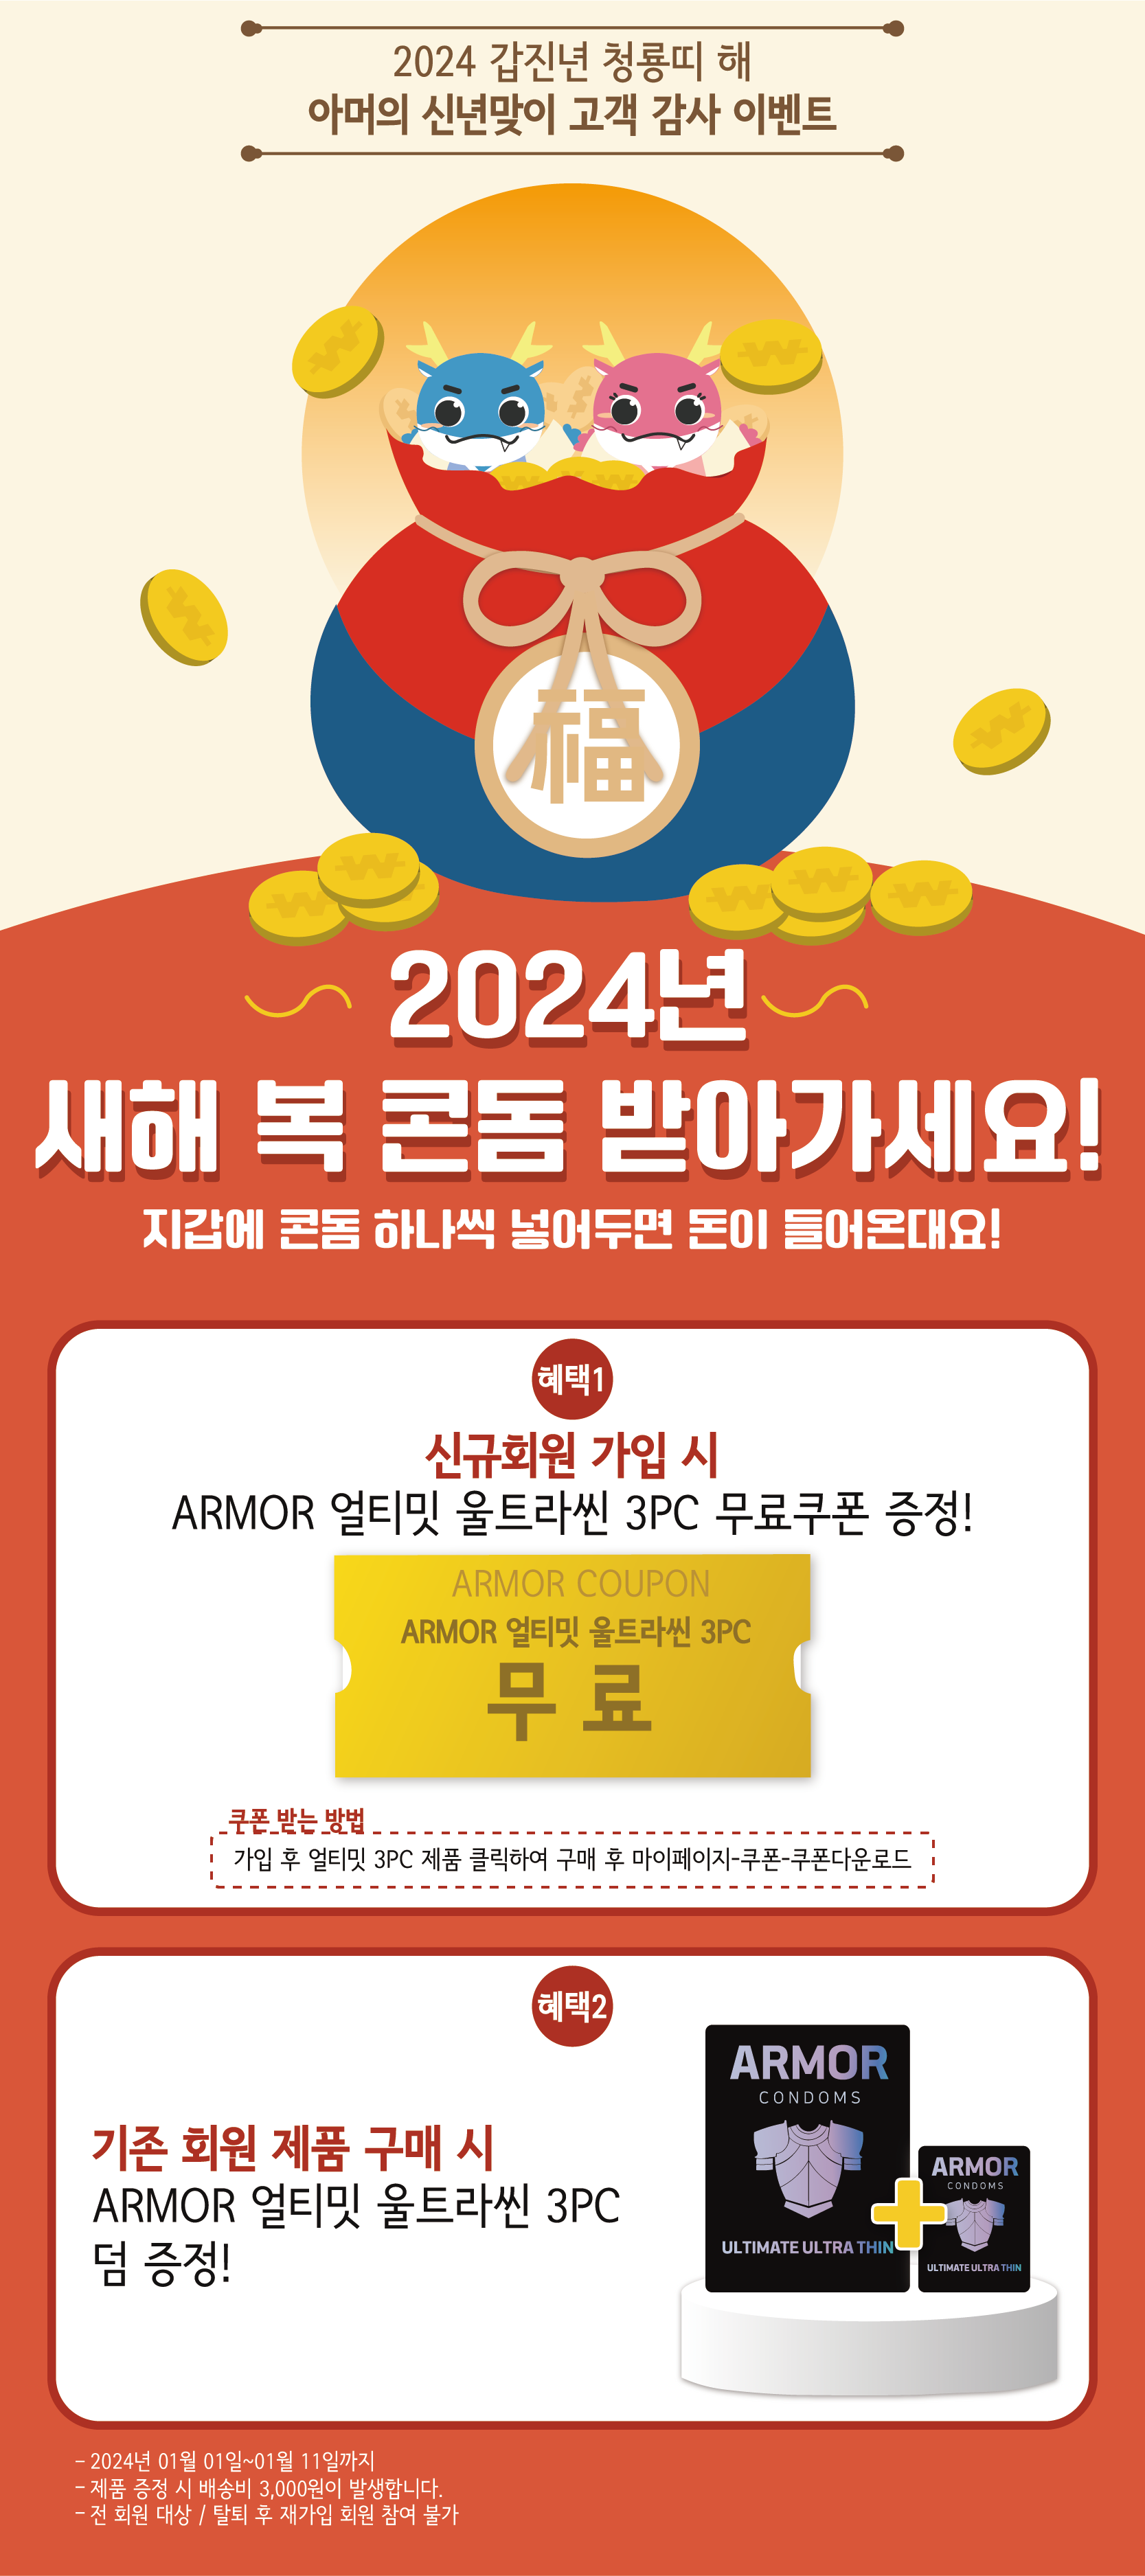 2024-01-01 아머 새해복 회원가입 이벤트.png